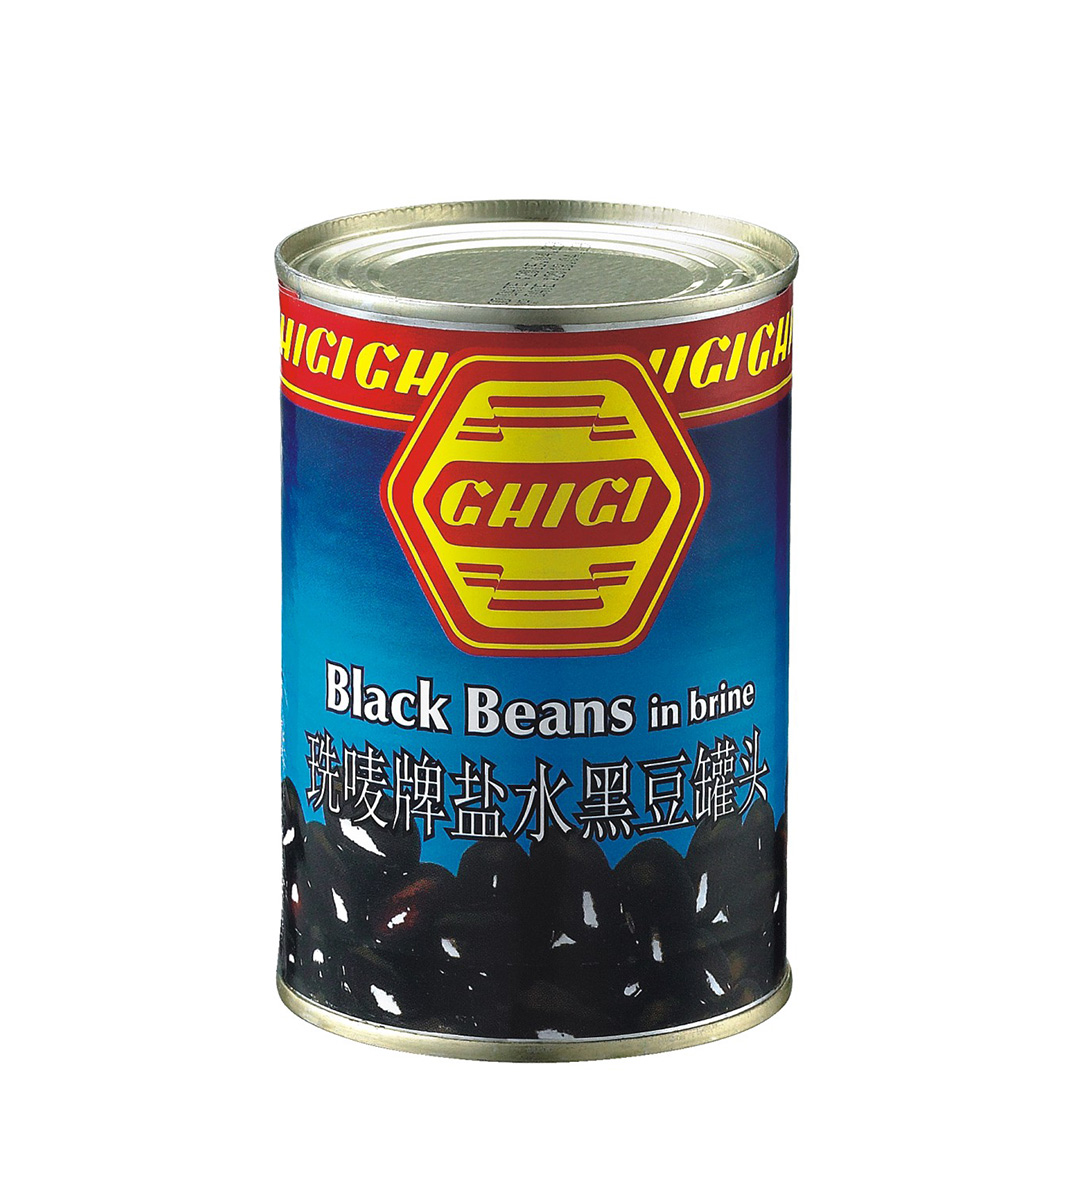 GHIGI Black Beans